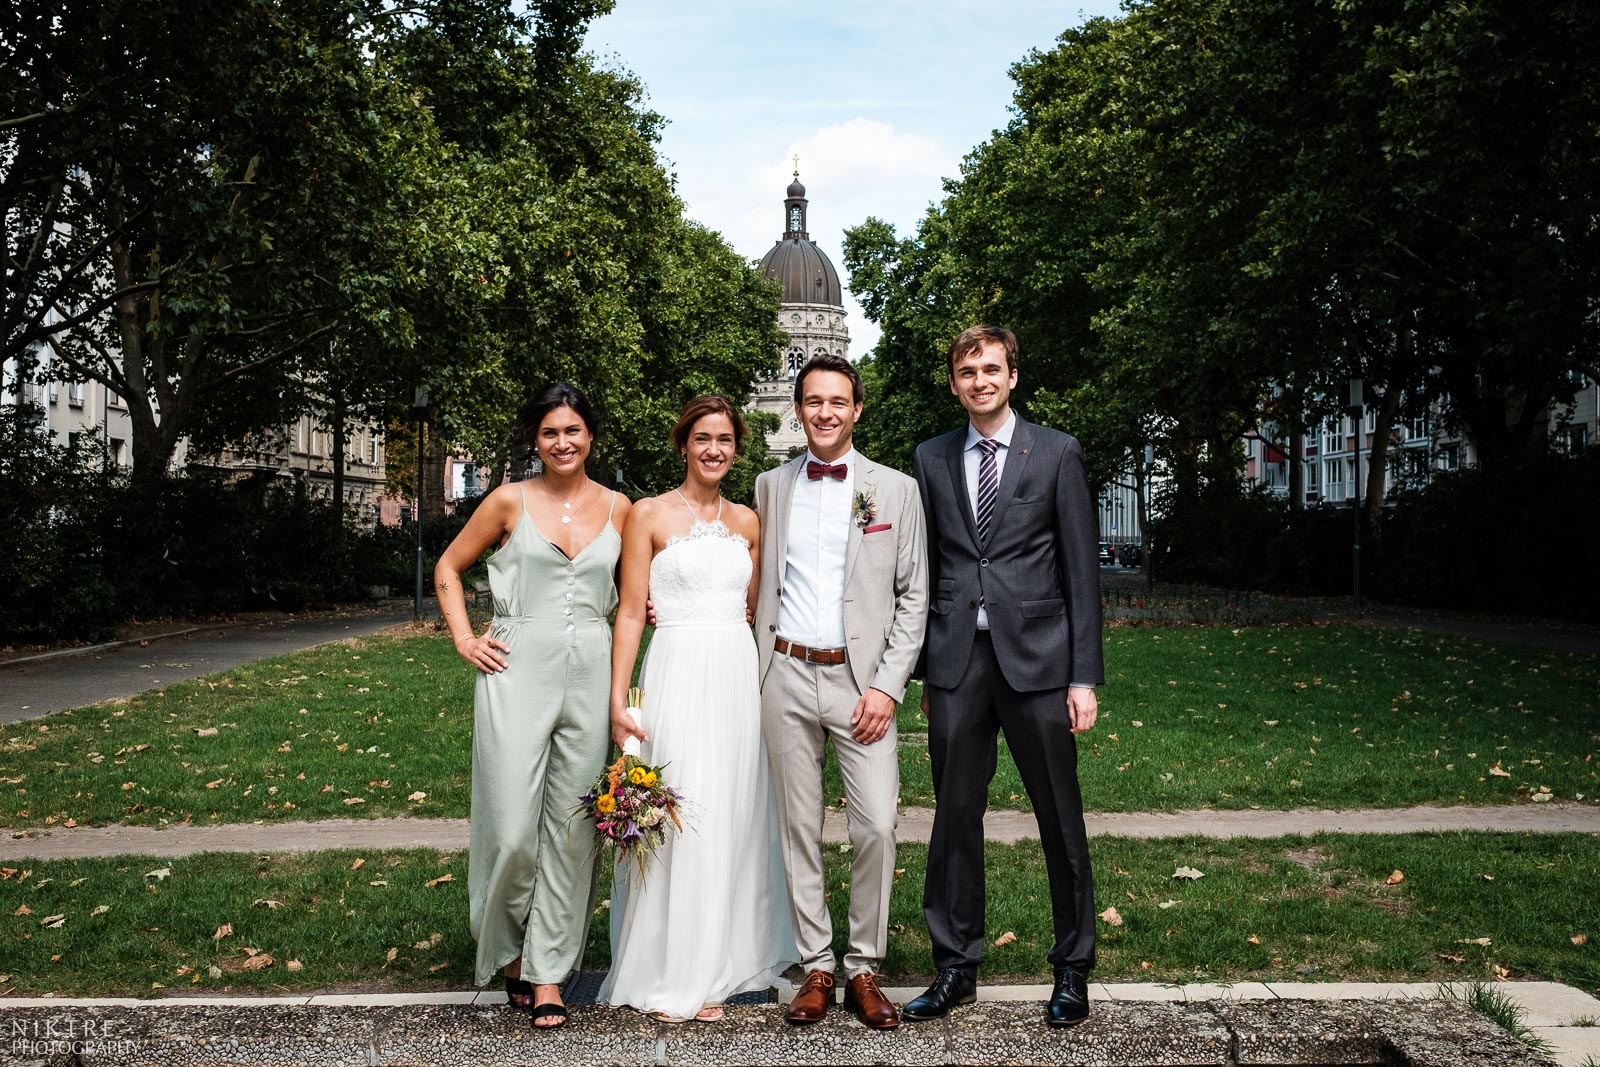 Gruppenfoto in der Hochzeitsreportage mit Christuskirche in Mainz